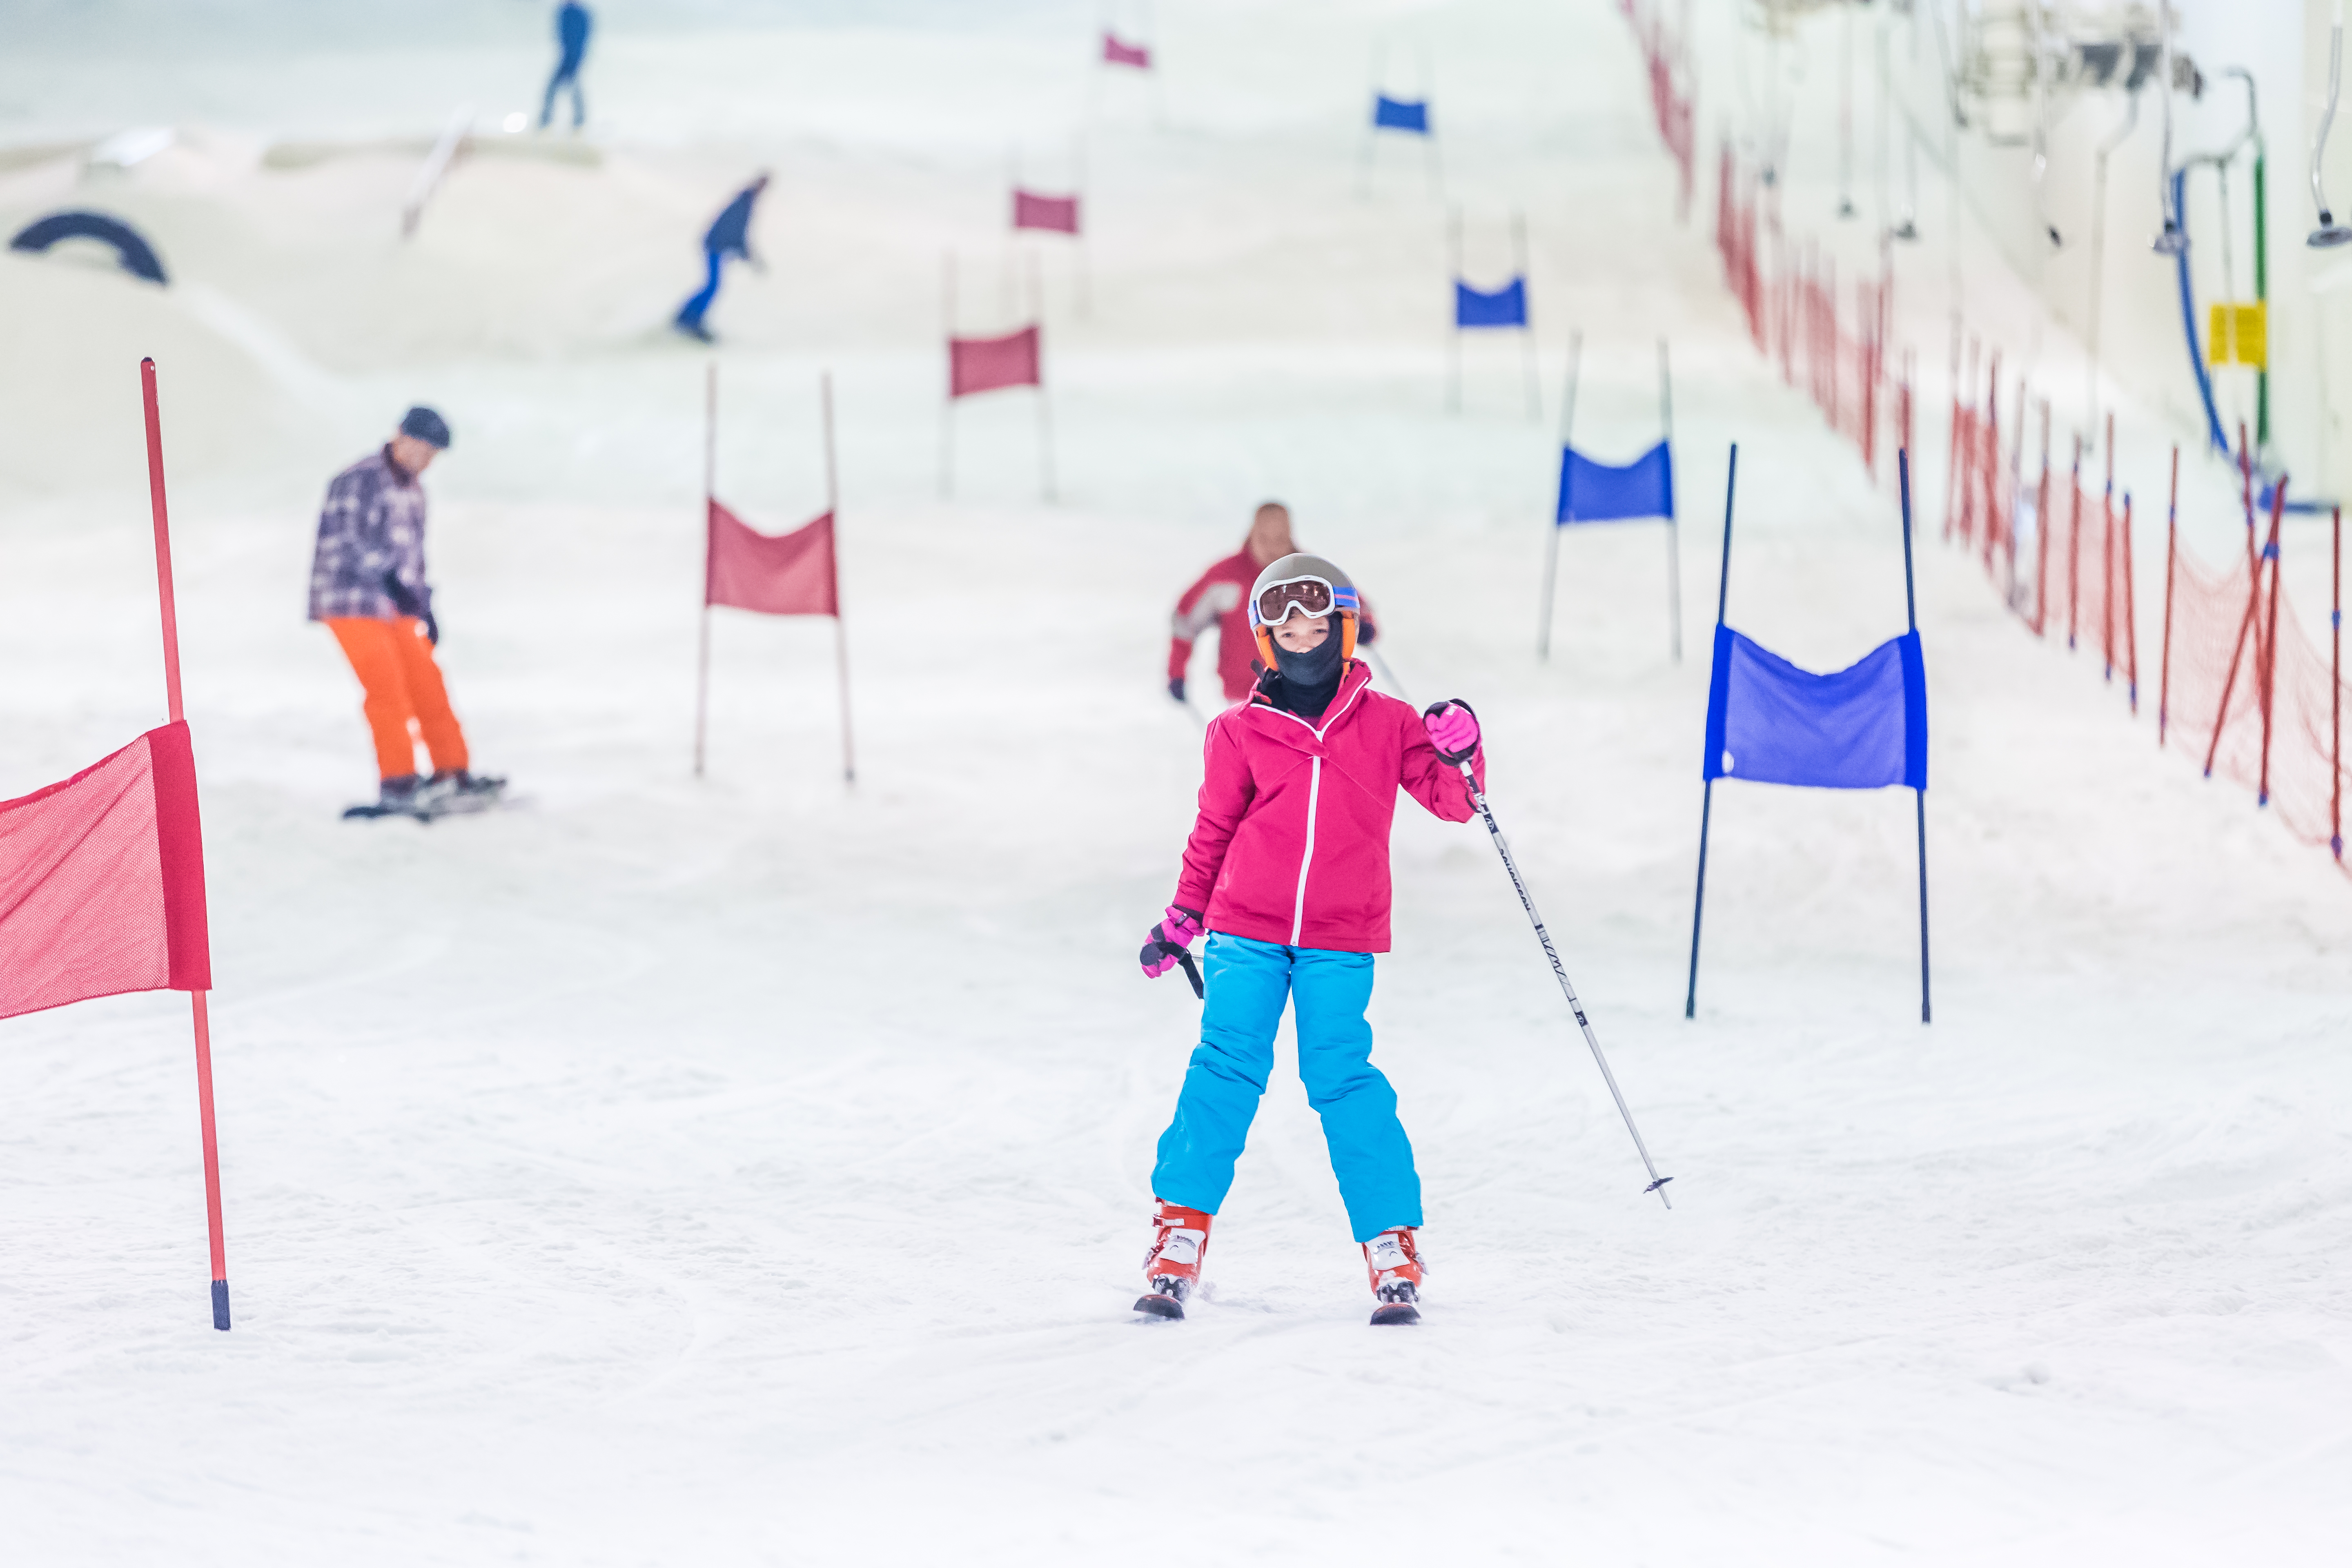 Skidôme Rucphen en Terneuzen ideaal voor Vlaamse wintersporters